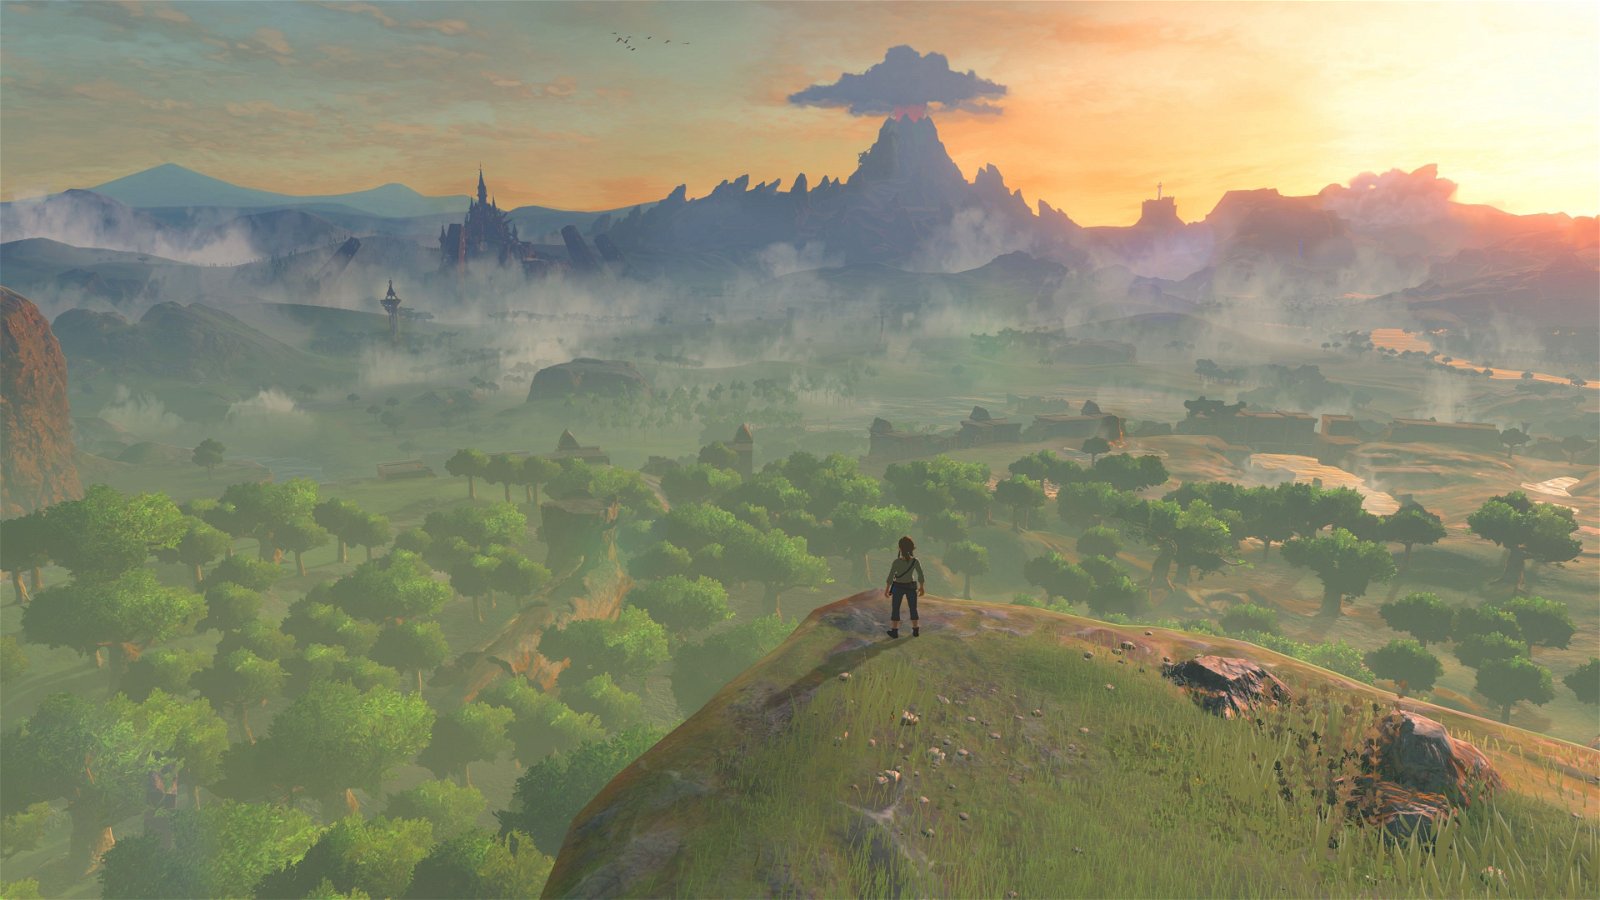 Zelda: Breath of the Wild tiene todas estas influencias de otros videojuegos